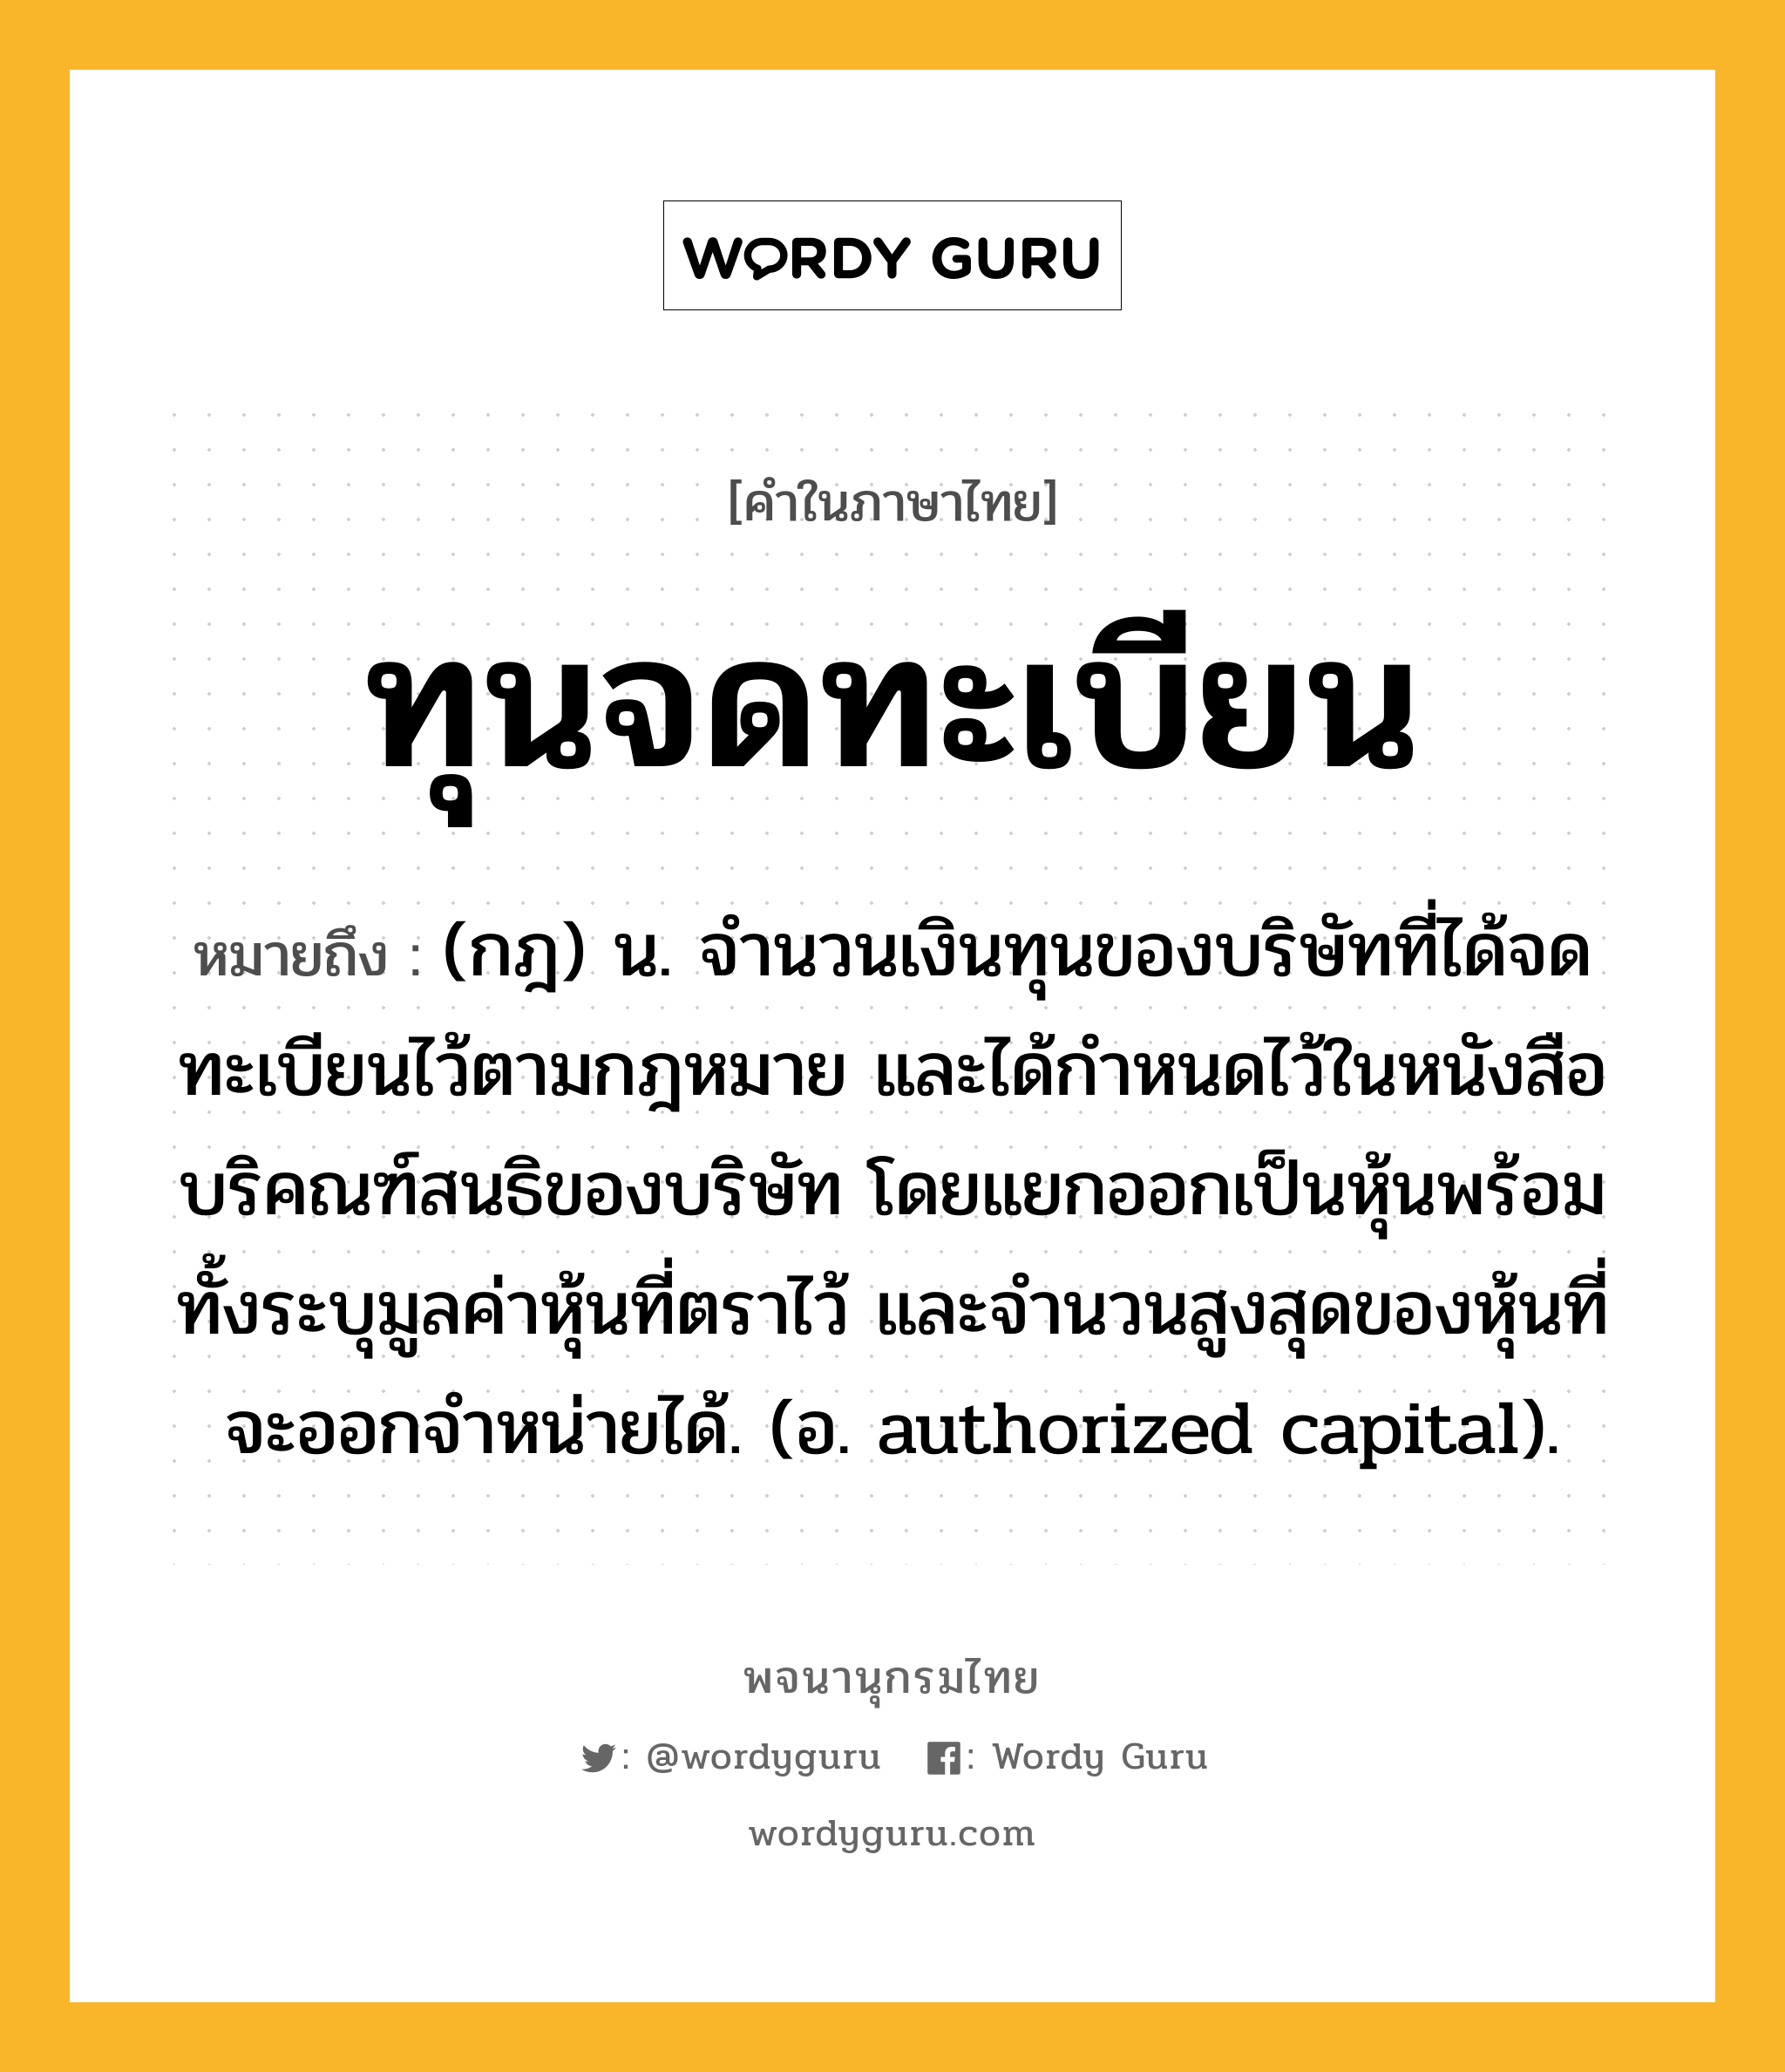 ทุนจดทะเบียน ความหมาย หมายถึงอะไร?, คำในภาษาไทย ทุนจดทะเบียน หมายถึง (กฎ) น. จํานวนเงินทุนของบริษัทที่ได้จดทะเบียนไว้ตามกฎหมาย และได้กําหนดไว้ในหนังสือบริคณฑ์สนธิของบริษัท โดยแยกออกเป็นหุ้นพร้อมทั้งระบุมูลค่าหุ้นที่ตราไว้ และจํานวนสูงสุดของหุ้นที่จะออกจําหน่ายได้. (อ. authorized capital).